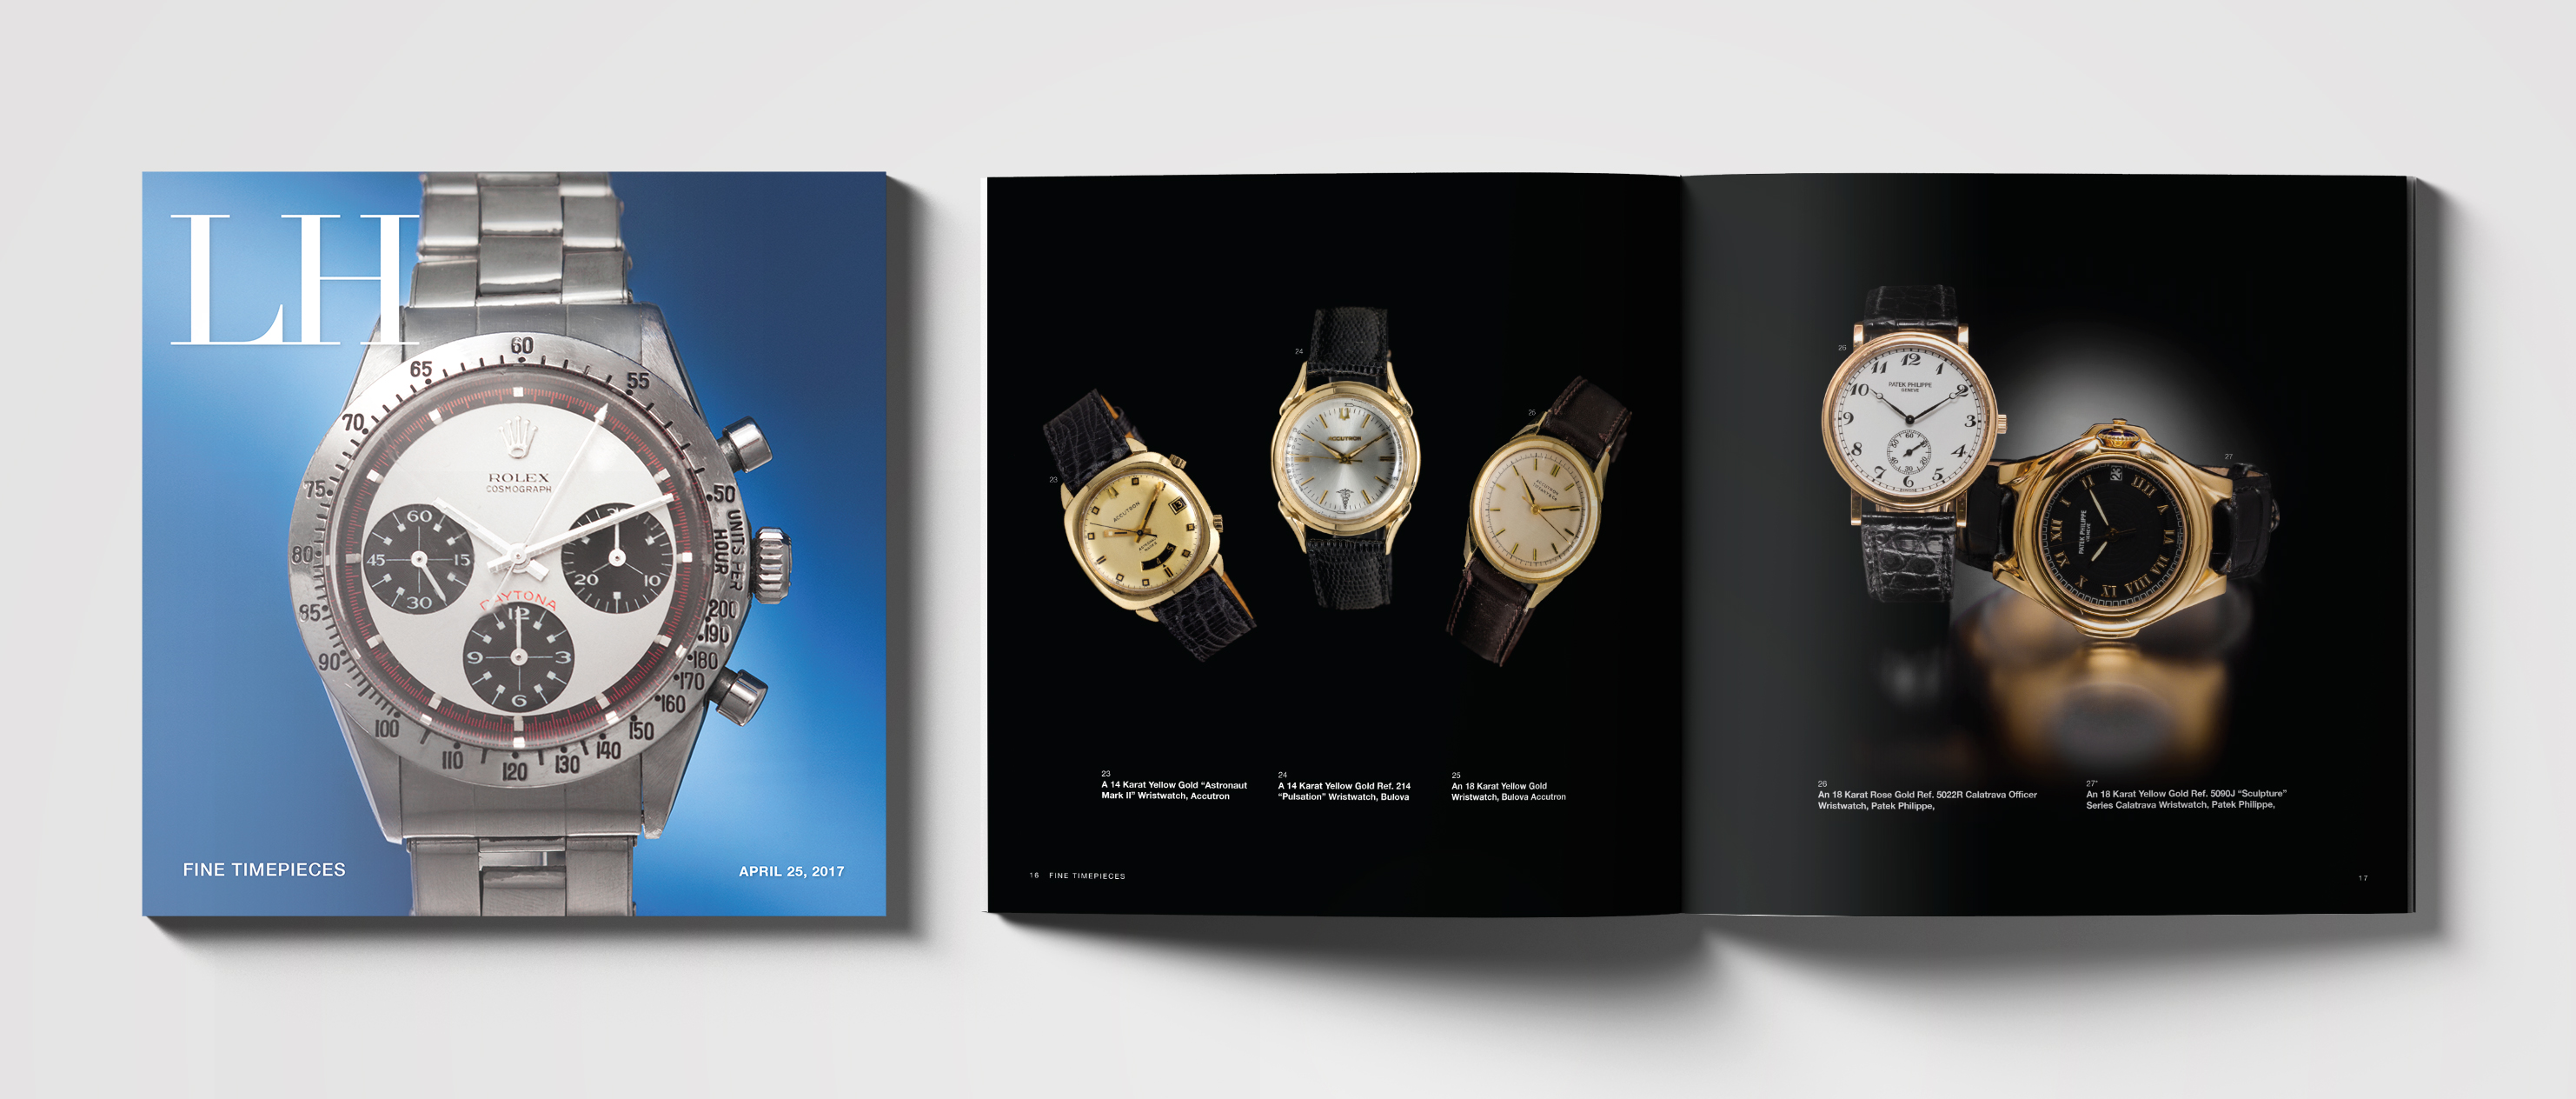 Timepieces catalogue design